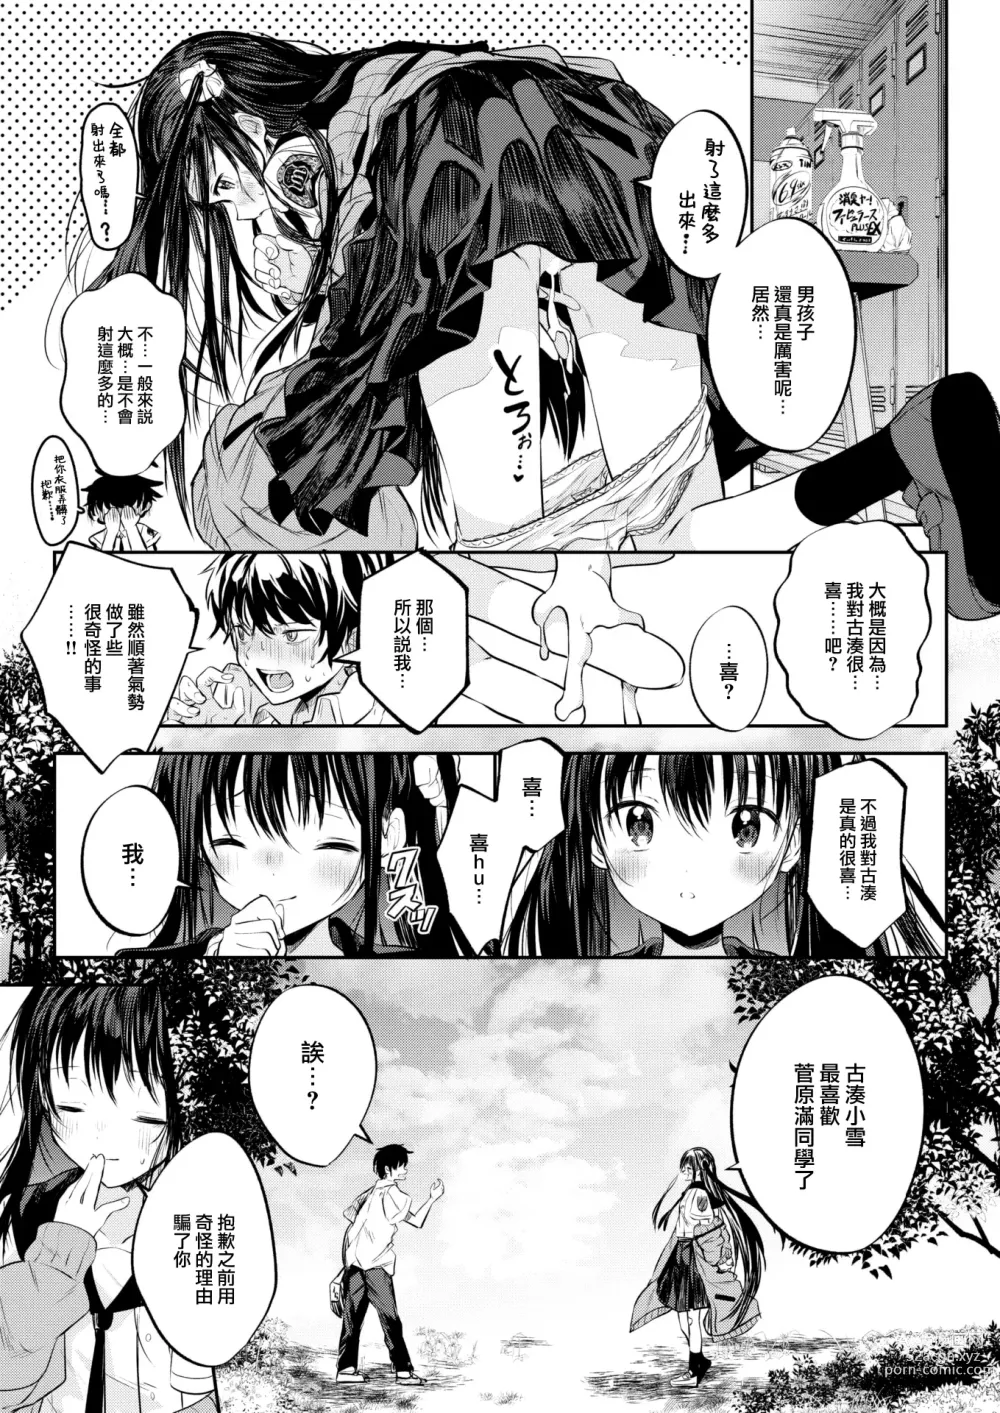 Page 26 of manga Otome no Binetsu wa Younetsu Shigoku.